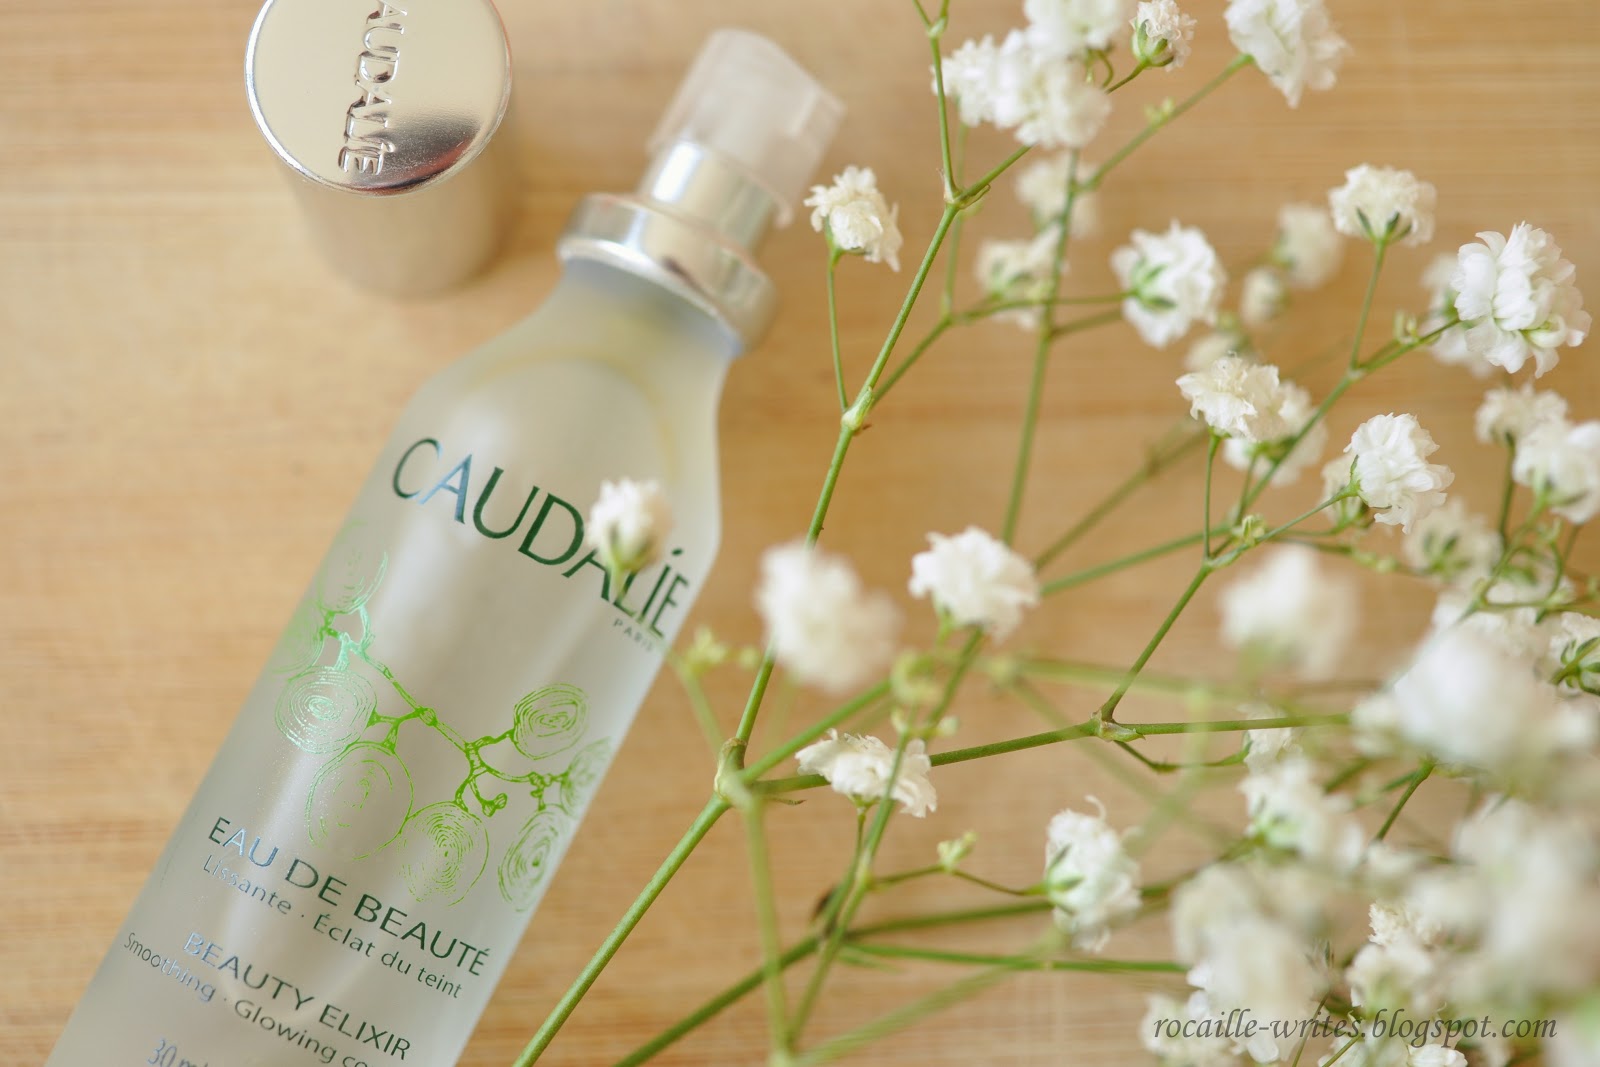 Caudalie Beauty Elixir giúp làn da thức tỉnh với mùi hương thanh mát chiết xuất từ bạc hà, hương thảo, nho và hoa hồng tươi.